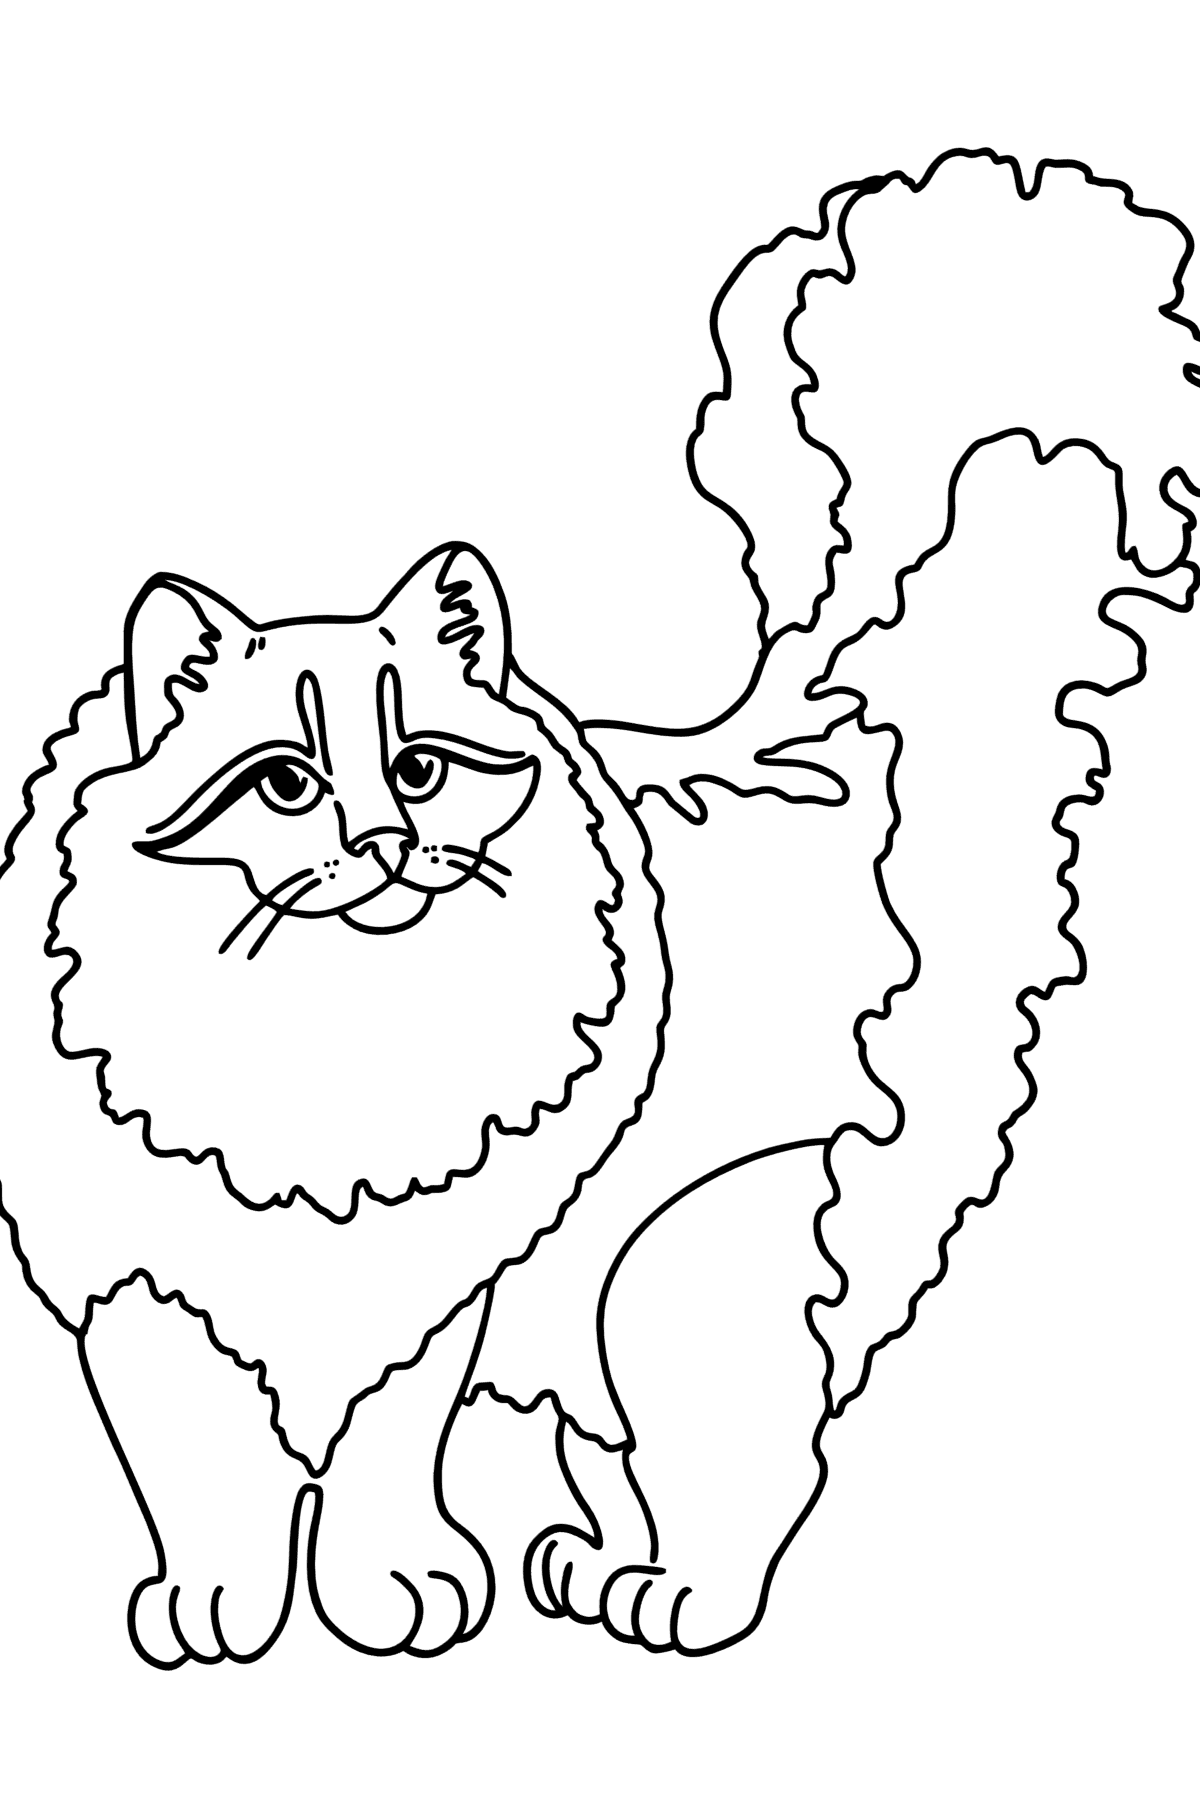 Tegning til fargelegging Sibirsk katt - Tegninger til fargelegging for barn